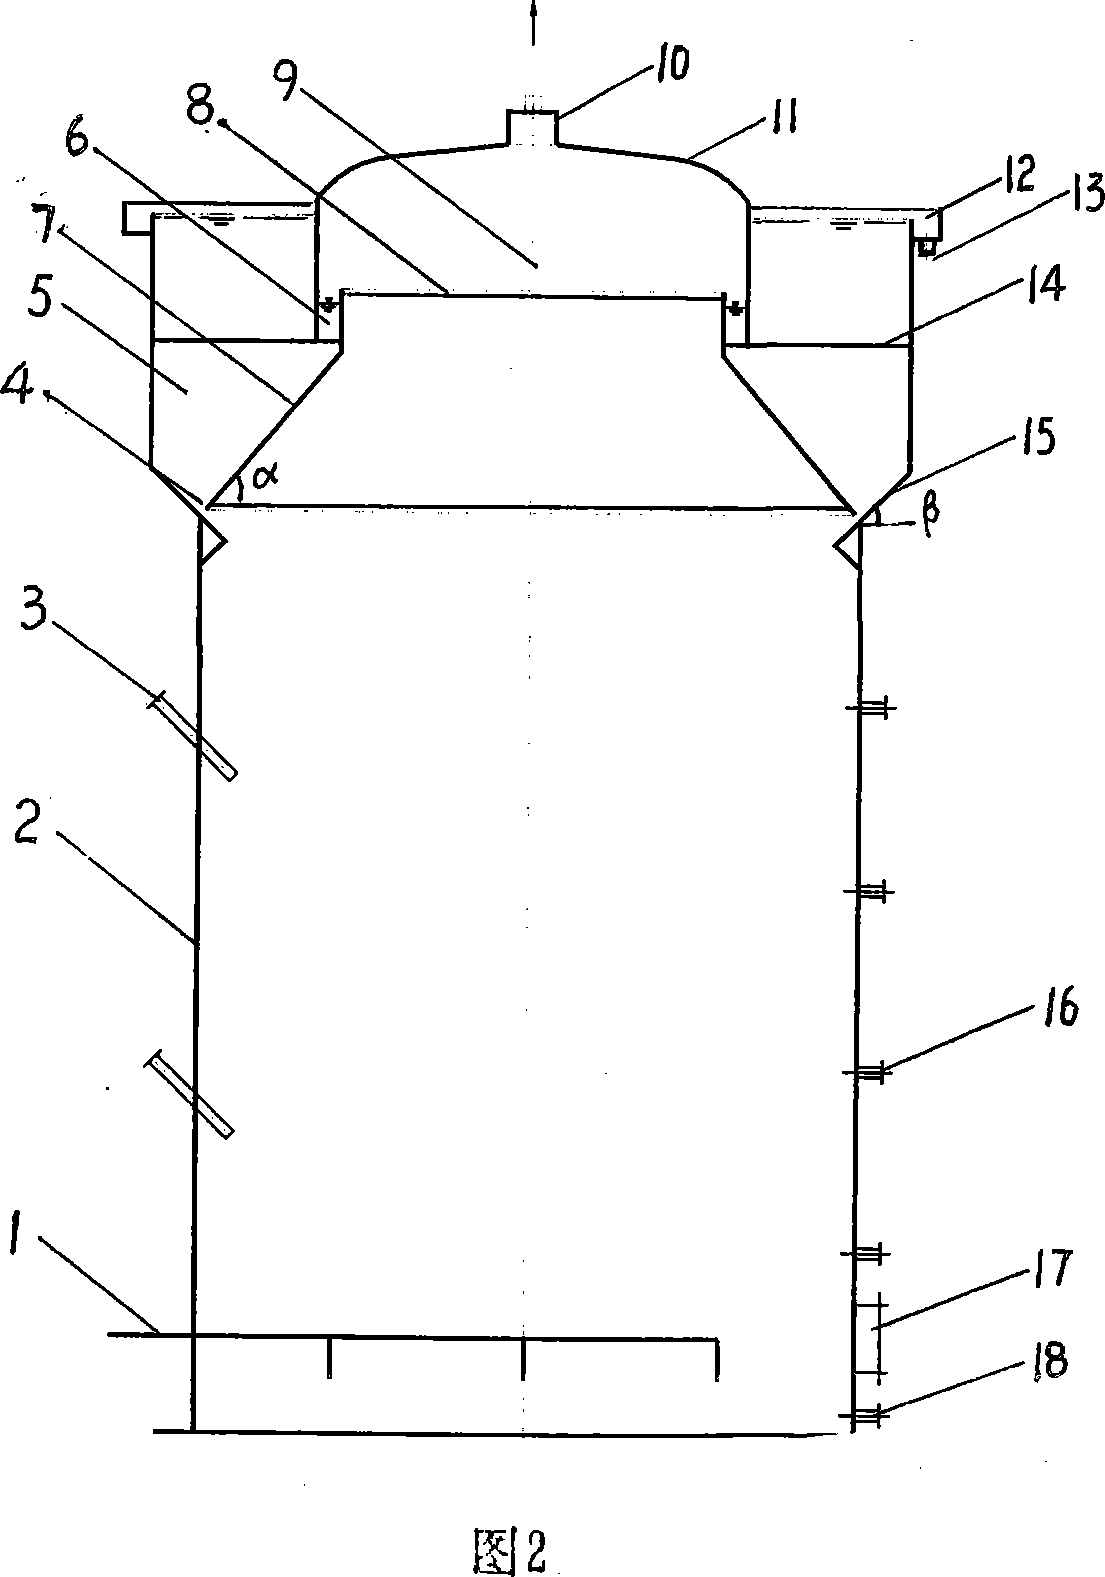 Upflow type anaerobic reactor